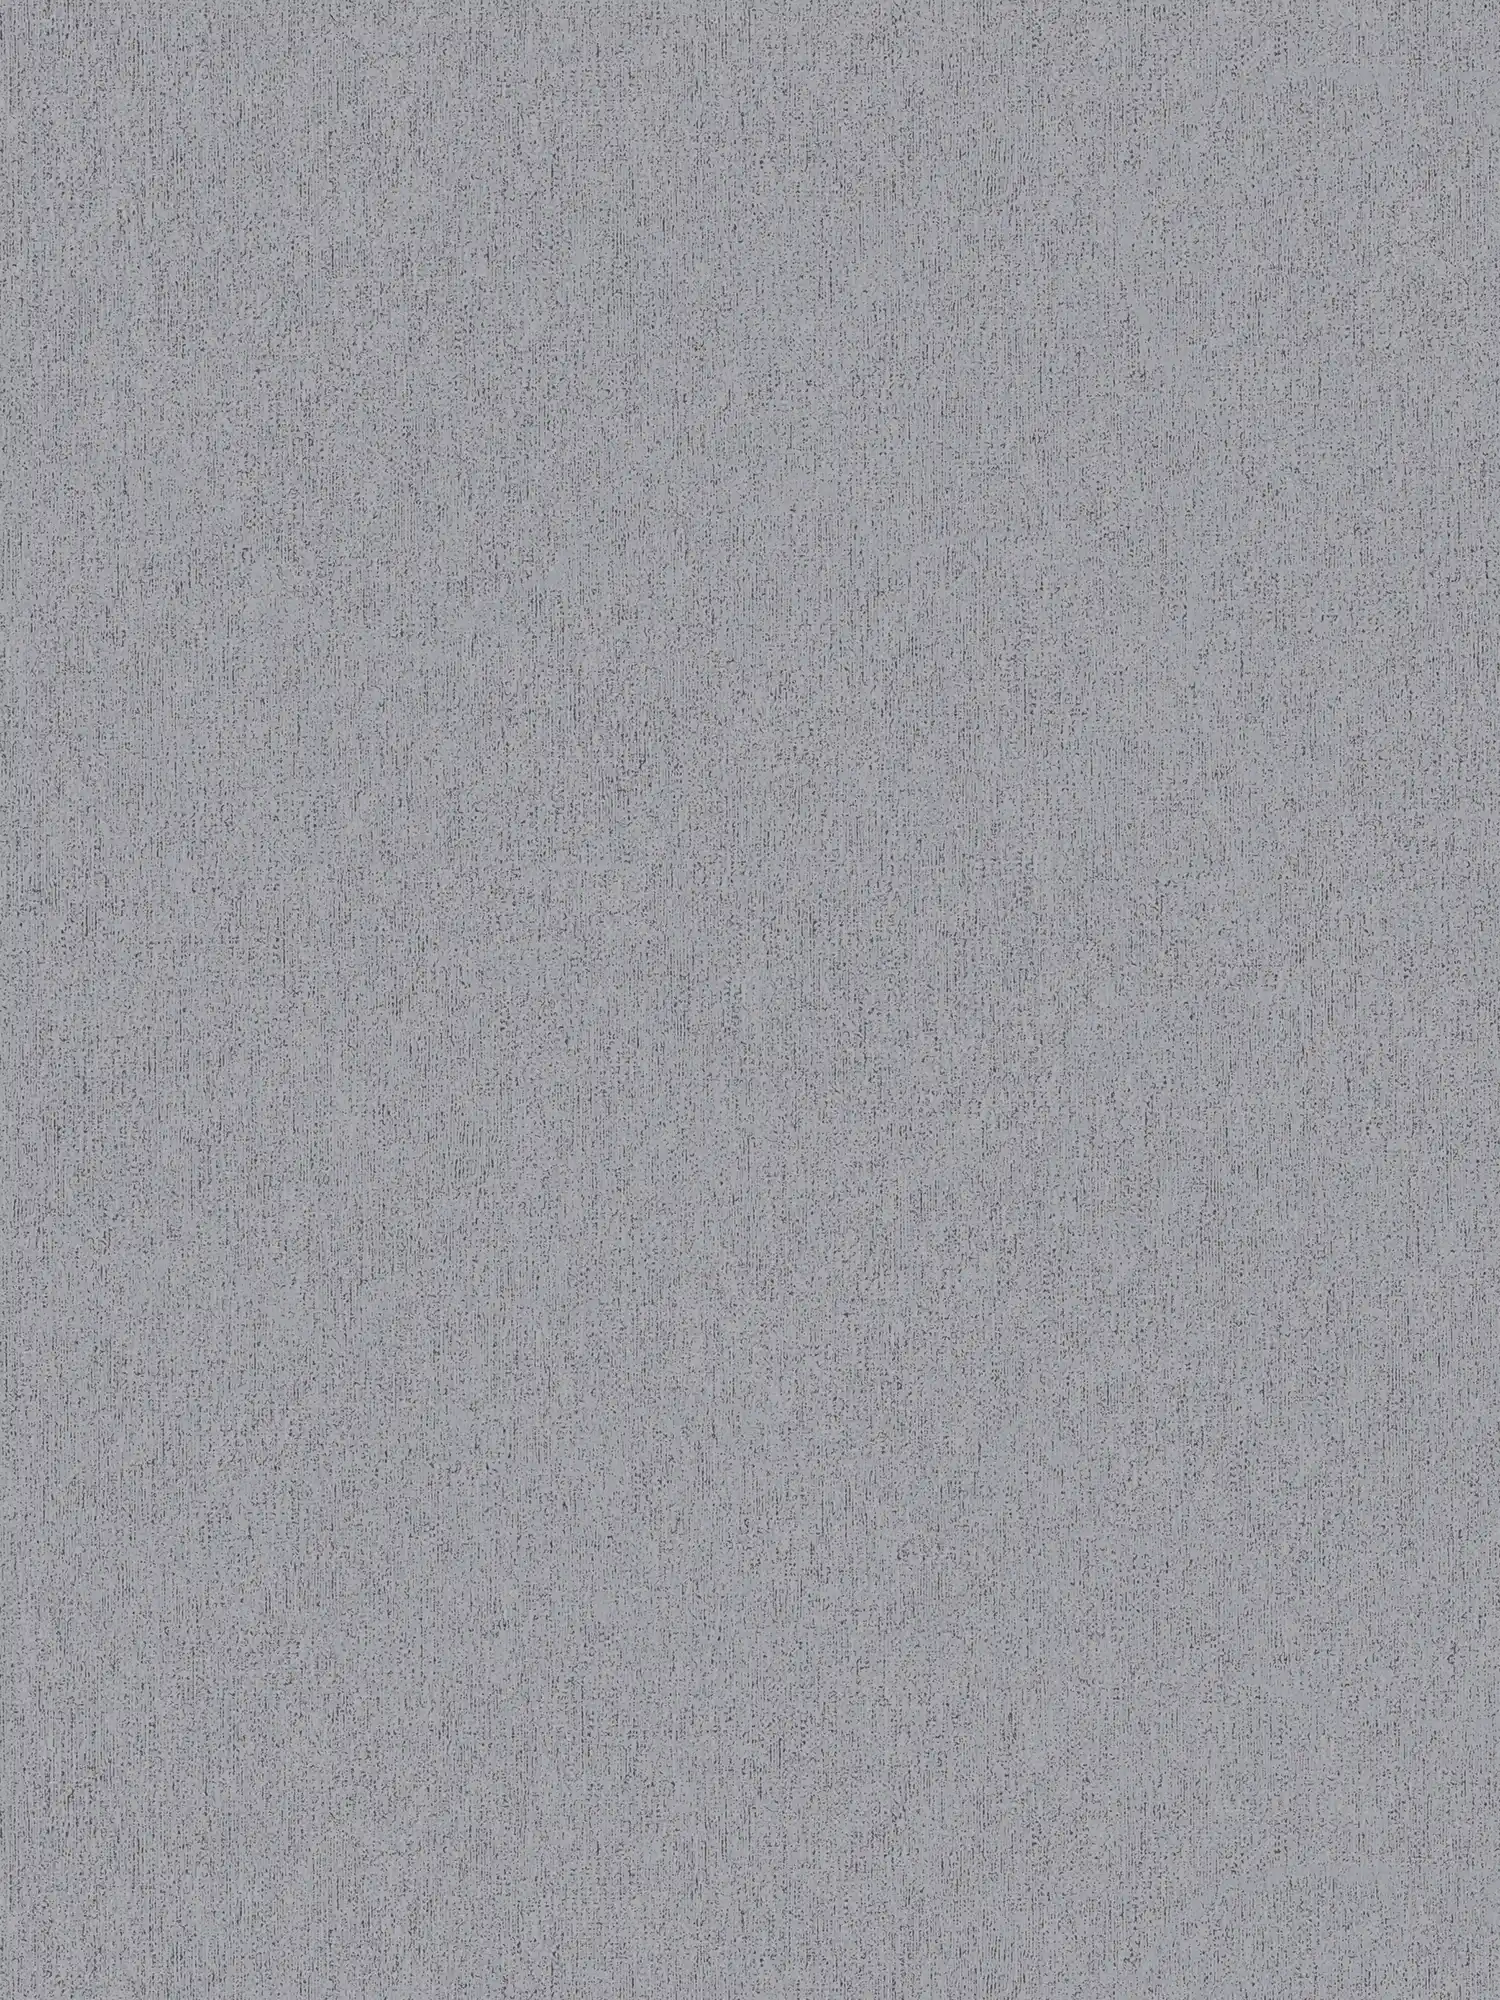 Papel pintado no tejido liso con aspecto texturizado - gris, gris oscuro
